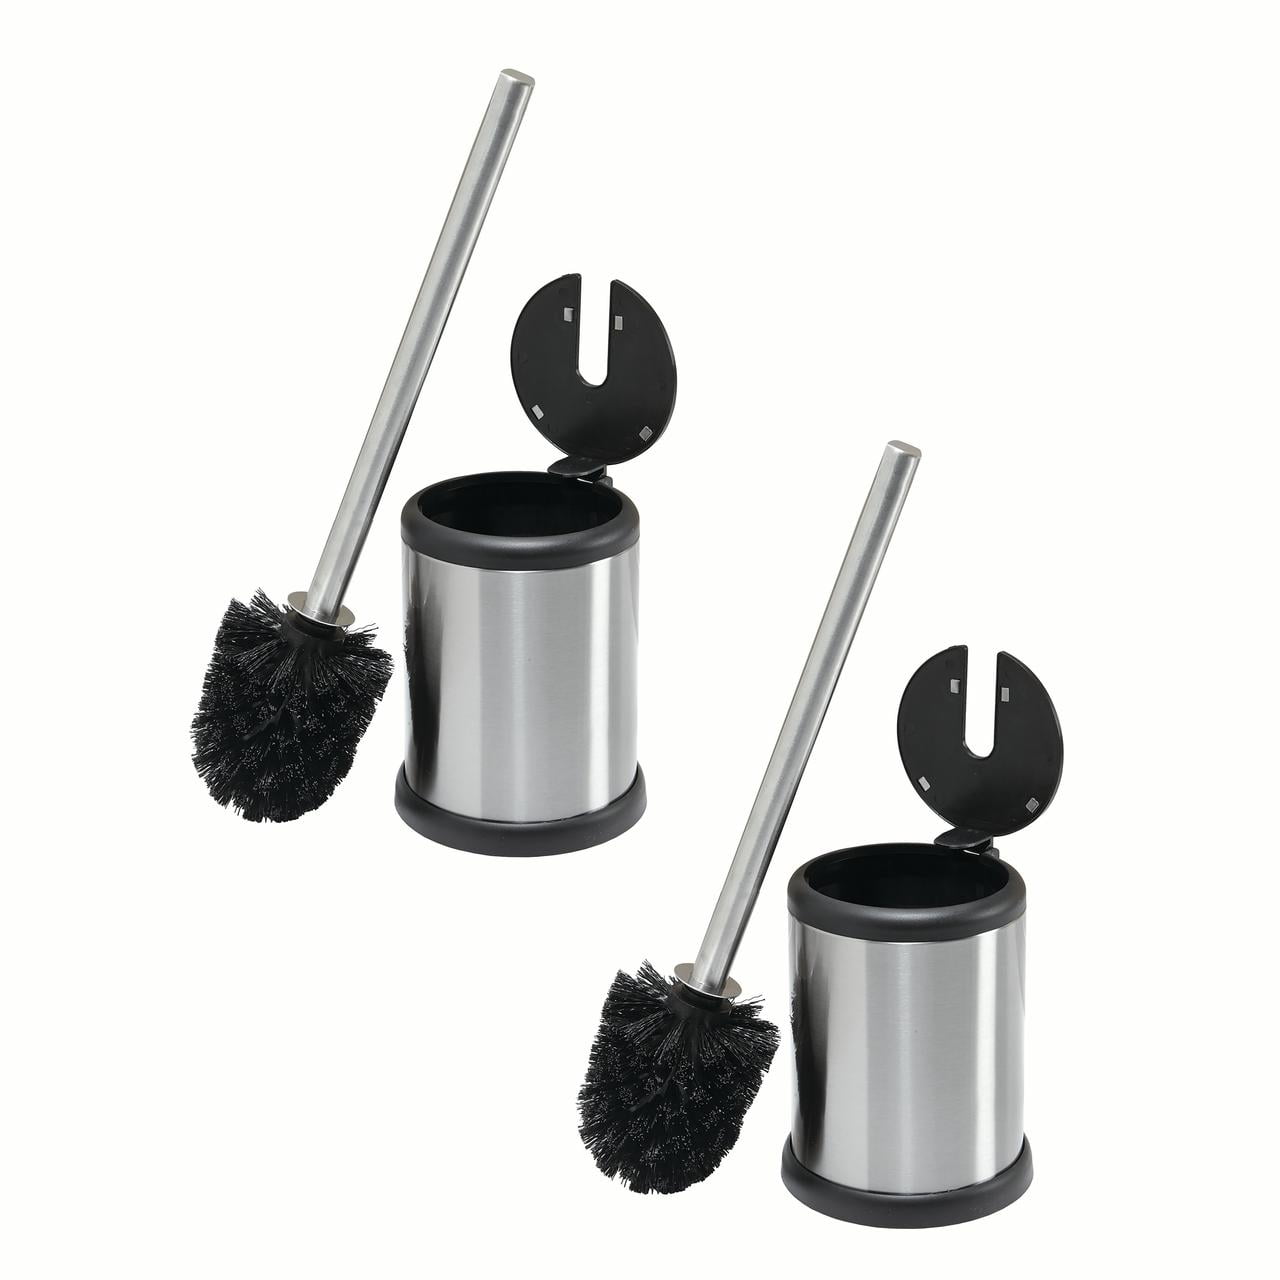 3 Set Toilet Brush Holder Bathroom Cleaning Bowl Design Chrome Stainless Steel 